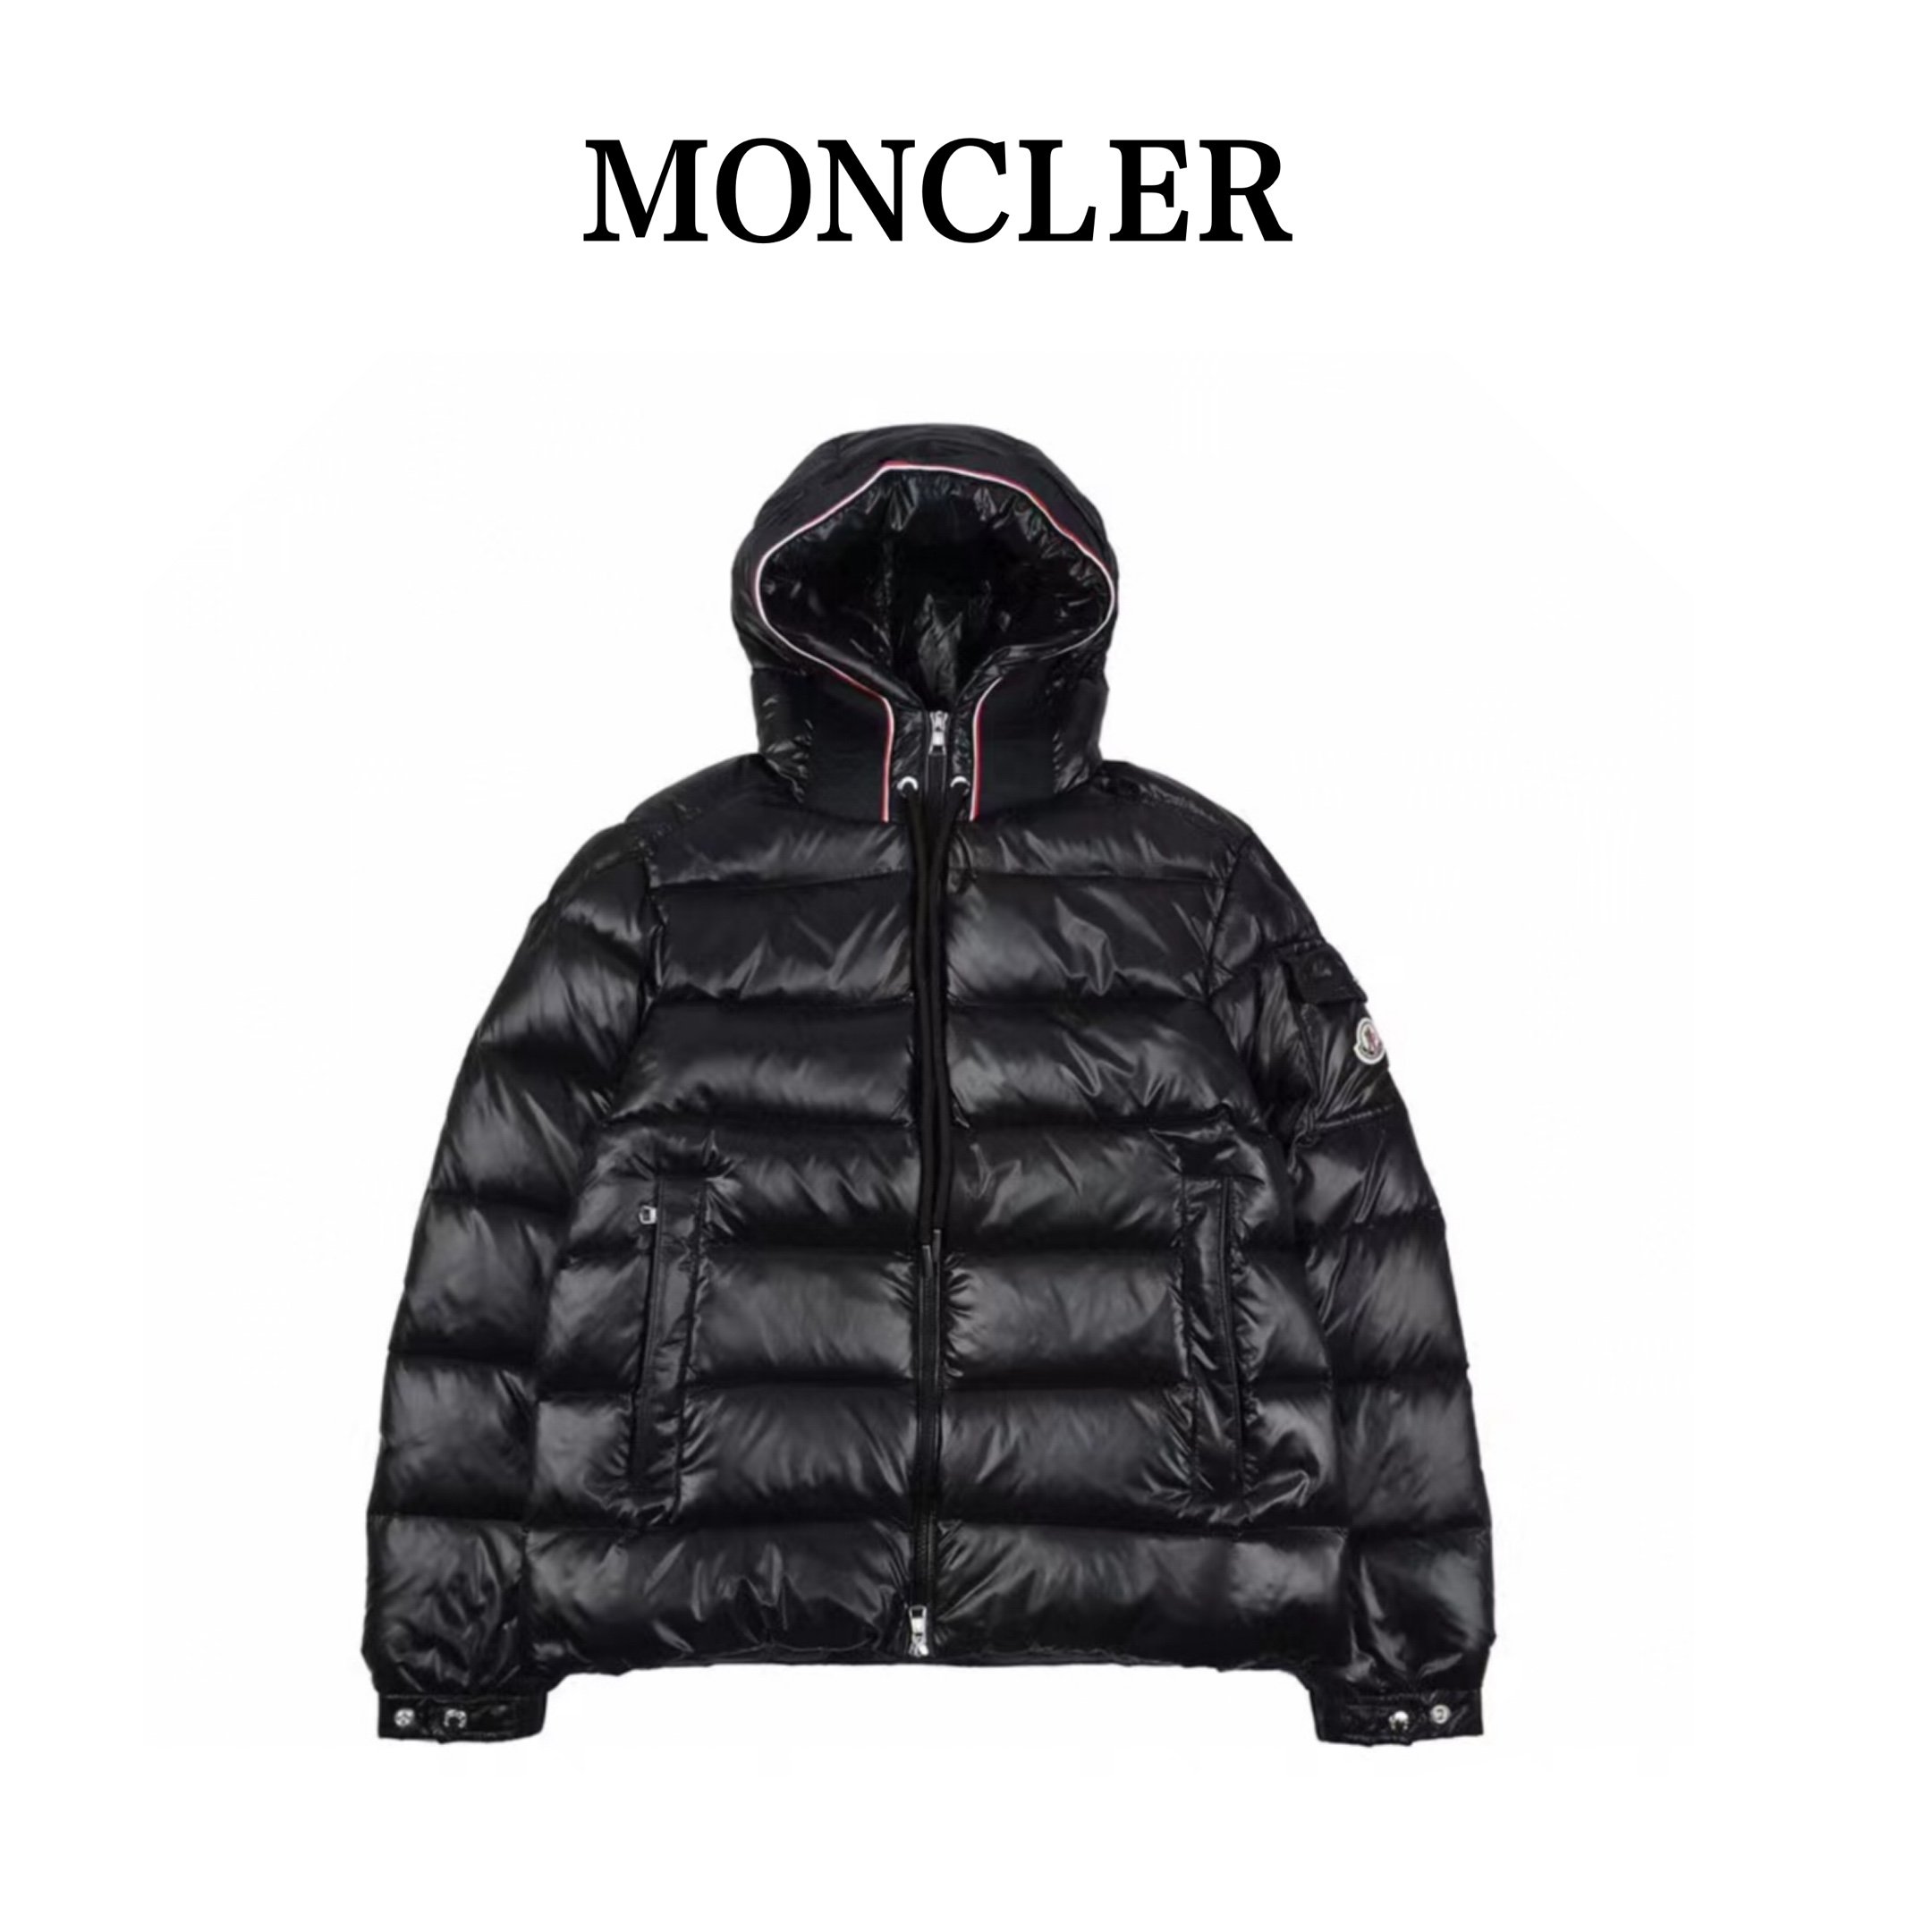 US$ 208.00 - Clothes Moncler 76 - www.hstockx.com